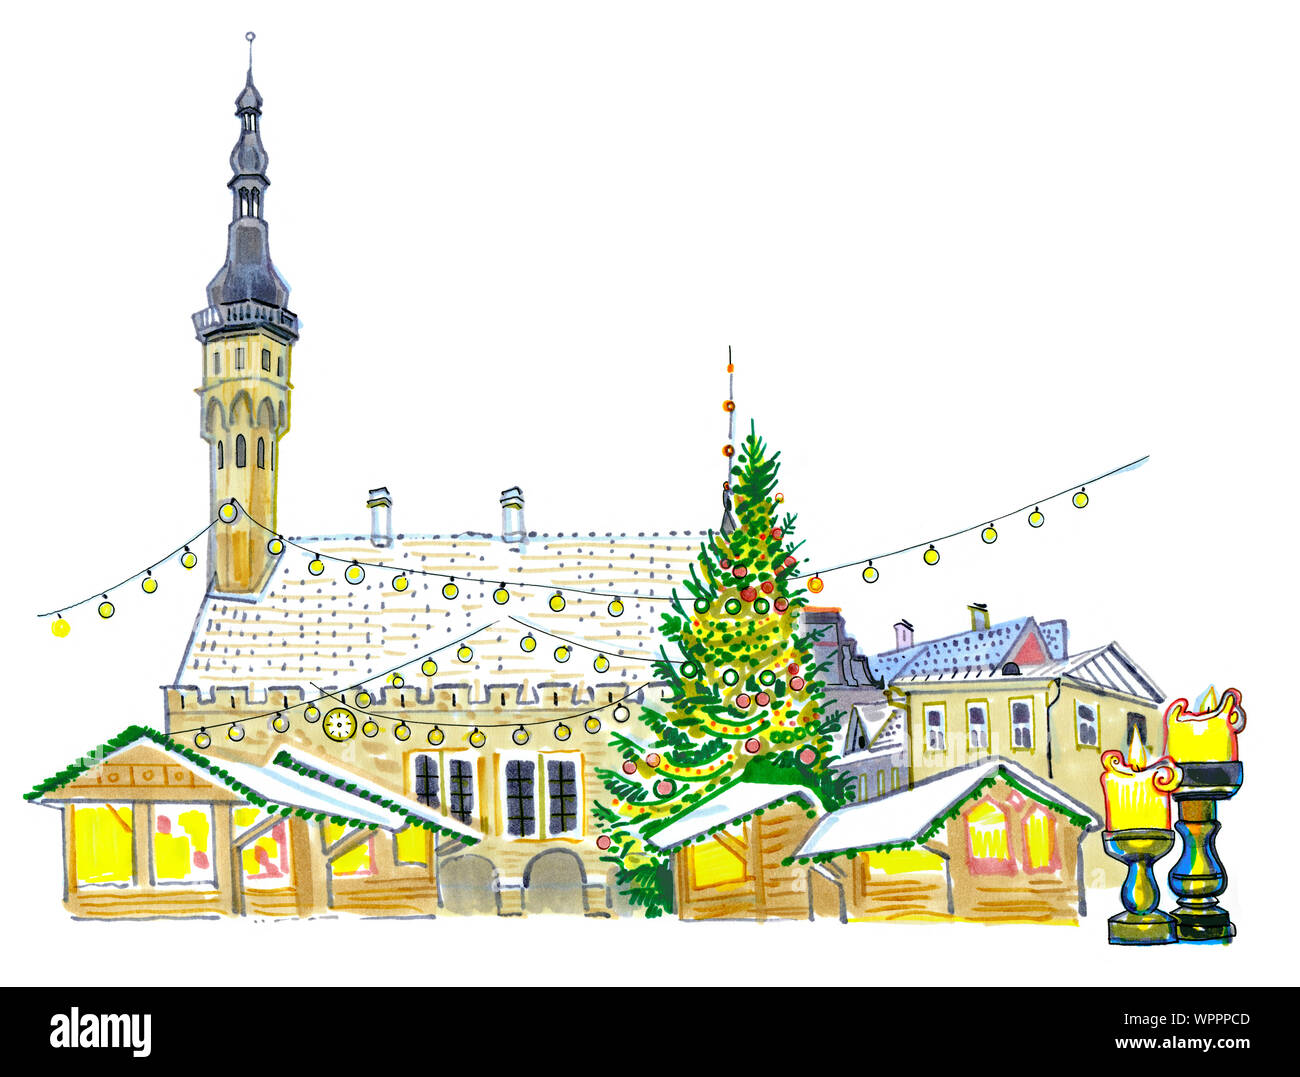 Marché de Noël à la place de l'hôtel de ville de Tallinn, Estonie. Nouvel An des arbres, maison de l'éclairage, des bougies, de la neige sur les toits. À la main sketchy styl Banque D'Images